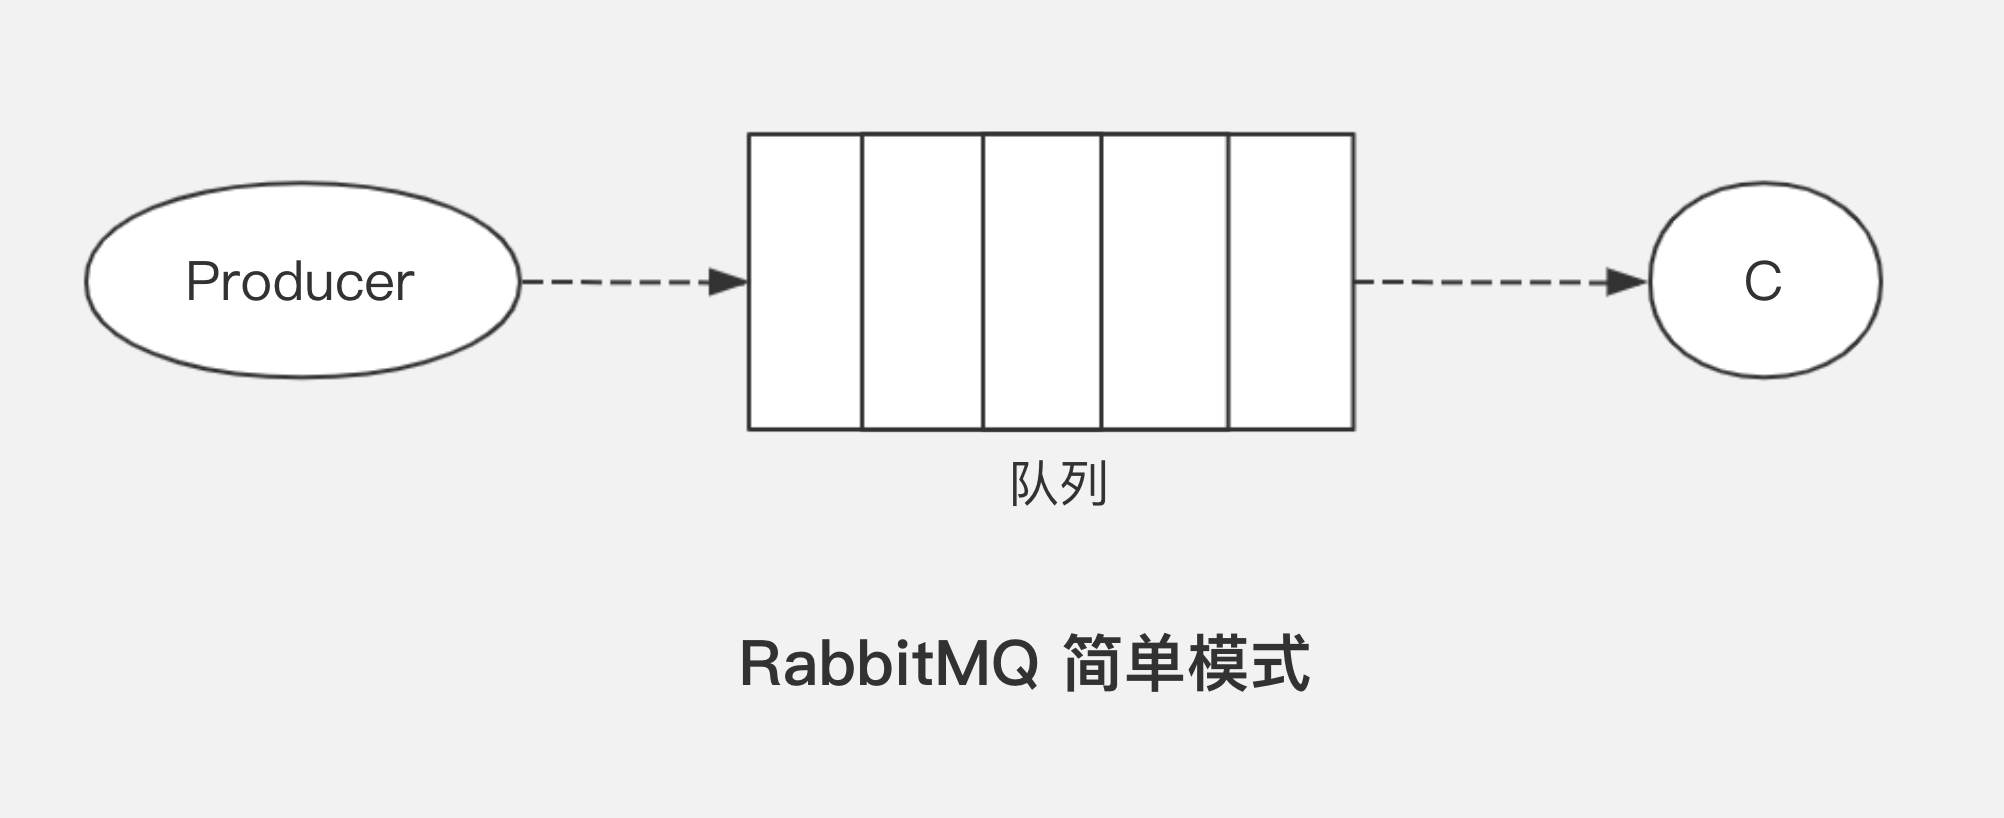 rabbitmq五种模式详解（含实现代码） 